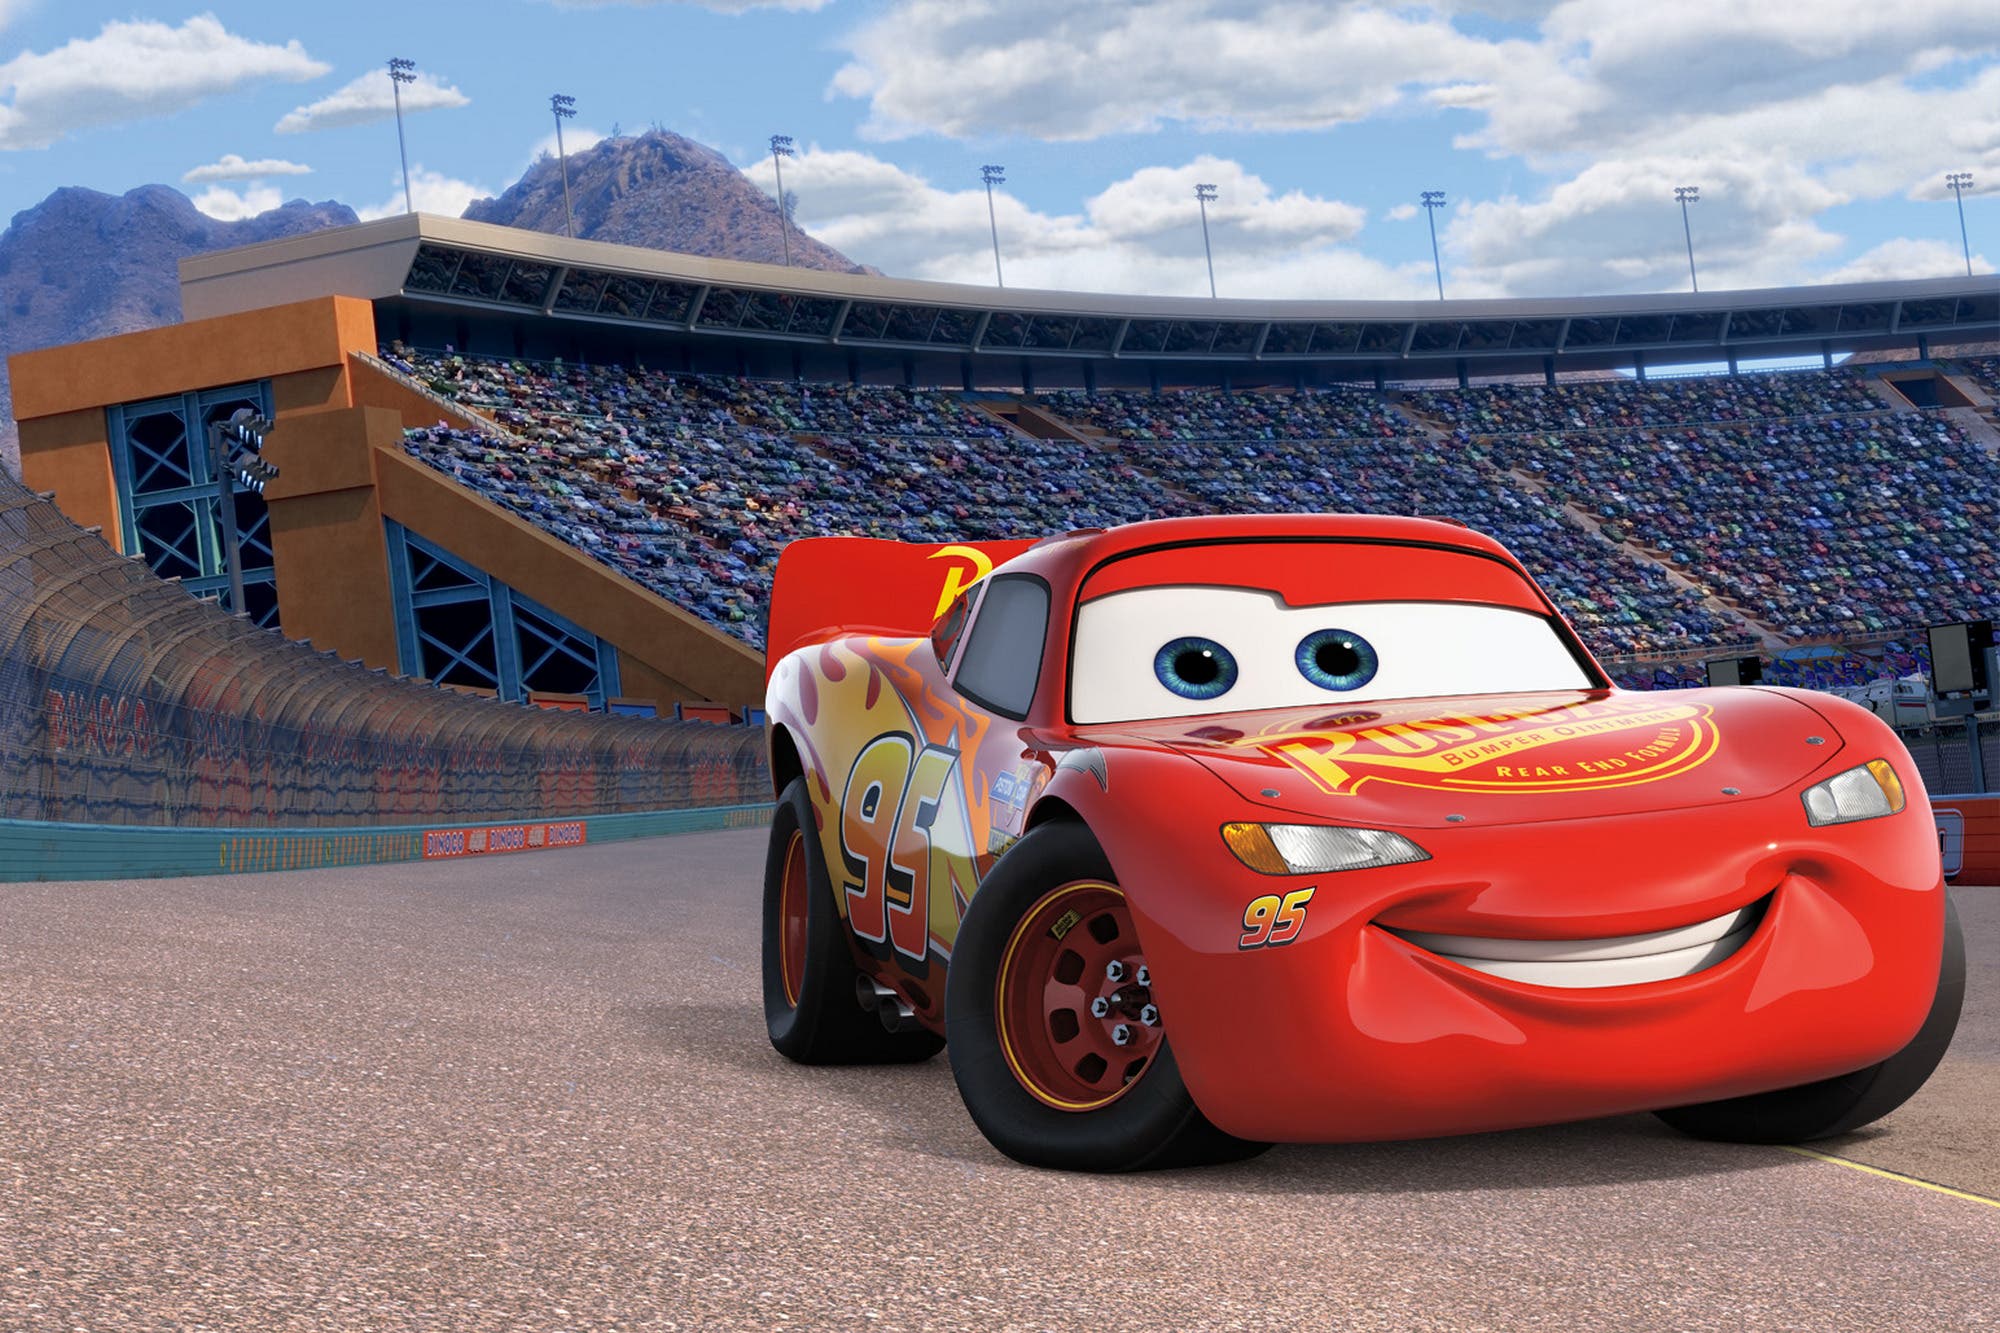 Pixar предлагает сцены фильмов, такие как автомобили, история игрушек и Up для фонов видеозвонков